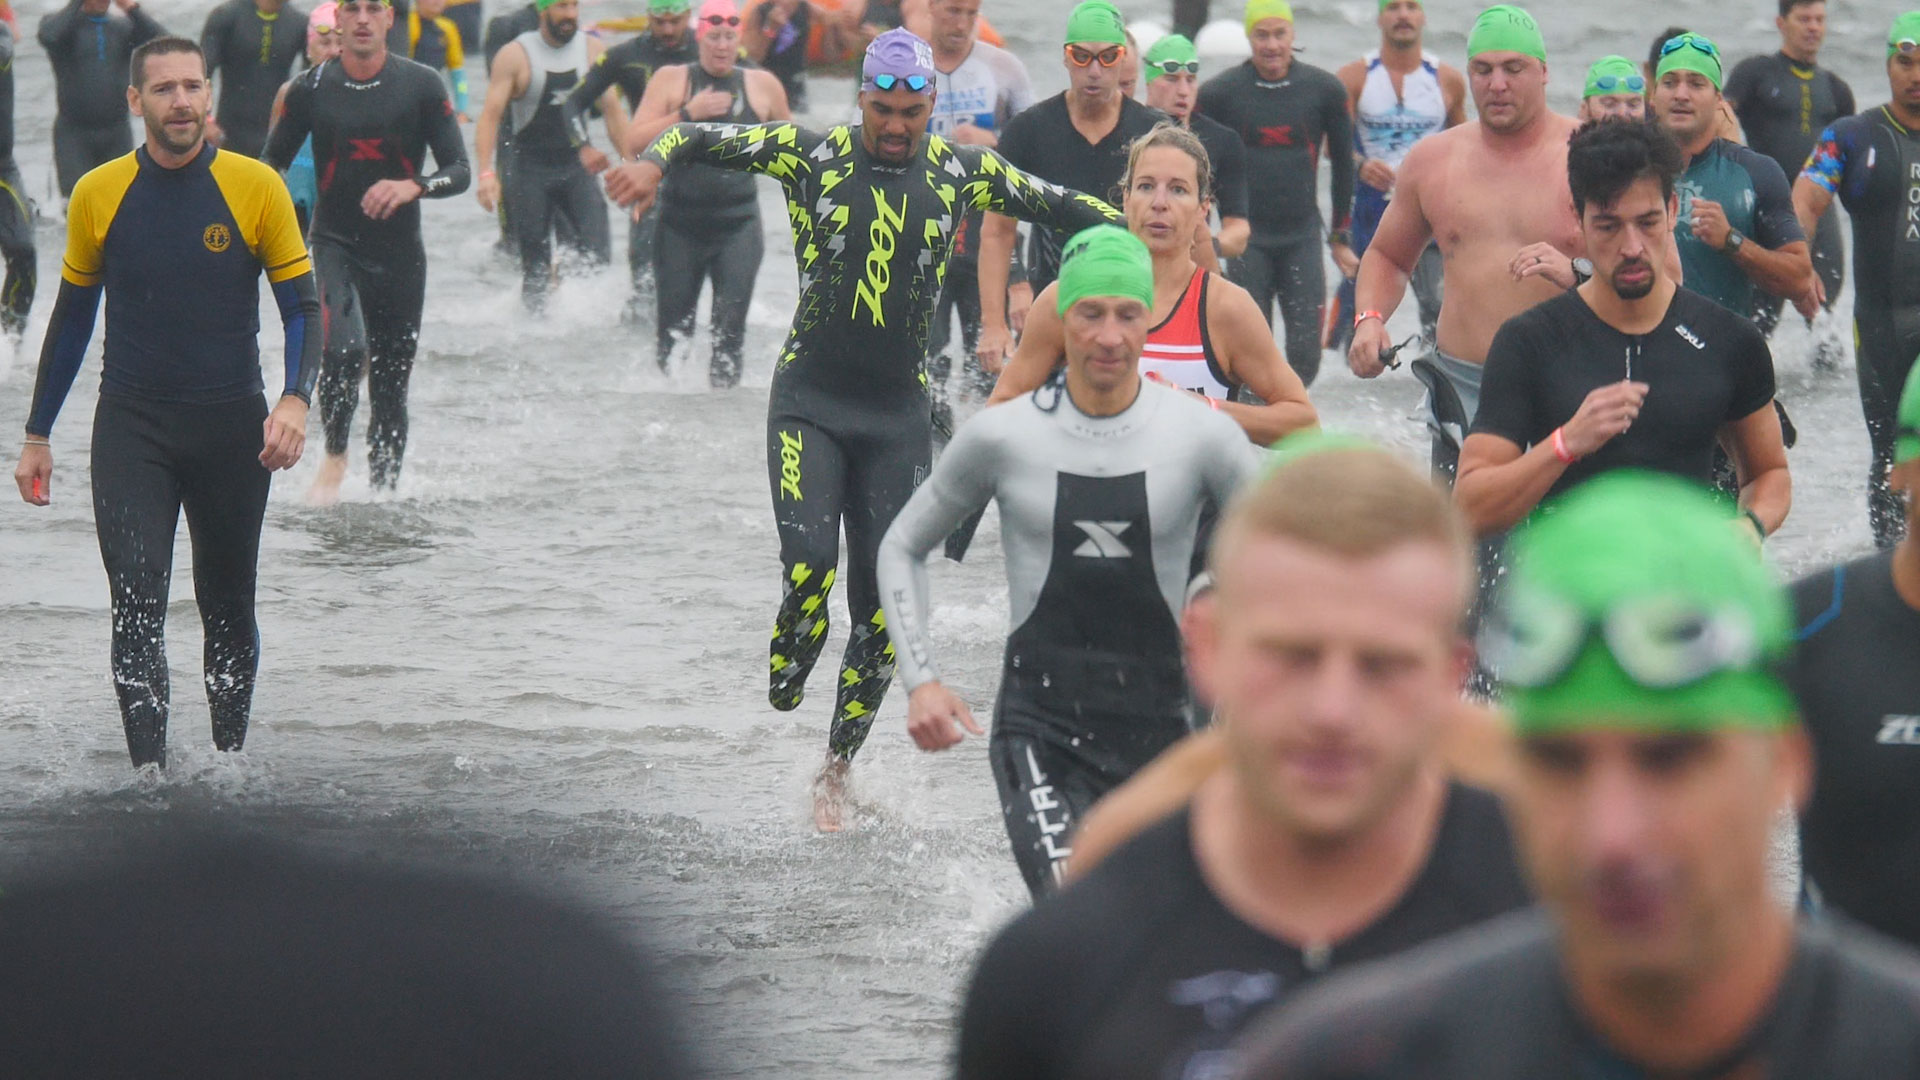 triathletes run through water in a crowd